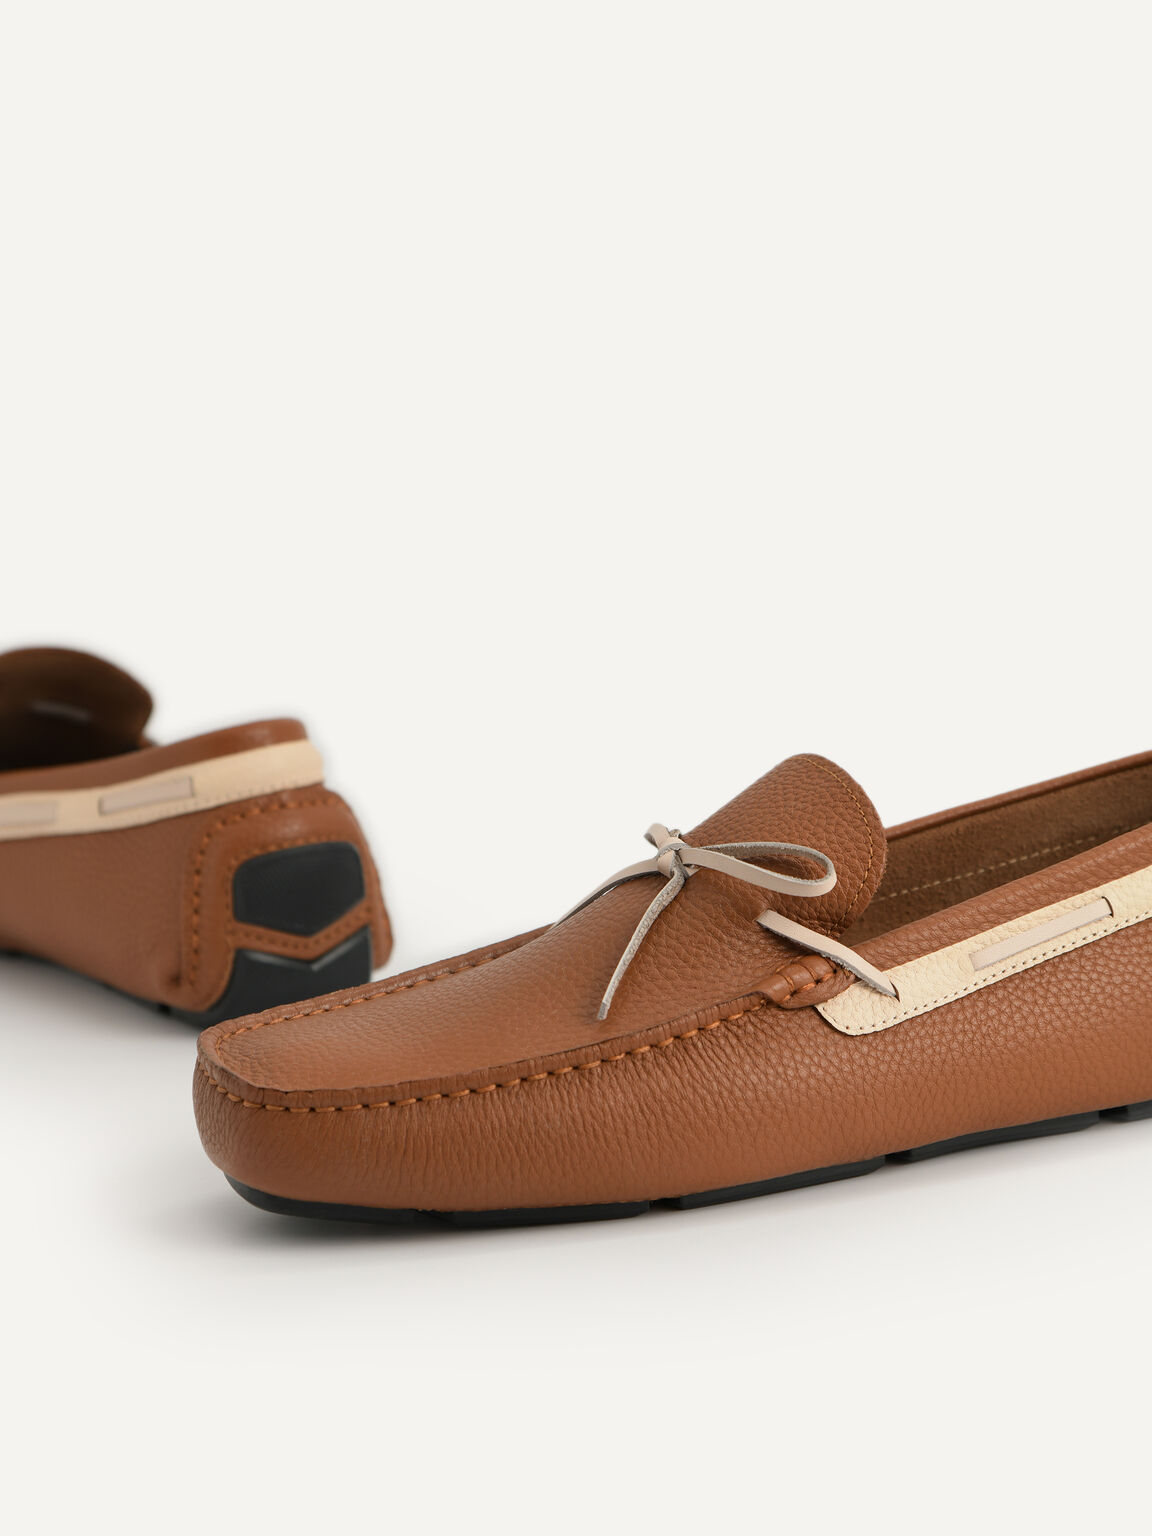 蝴蝶結織紋莫卡辛鞋, 棕色